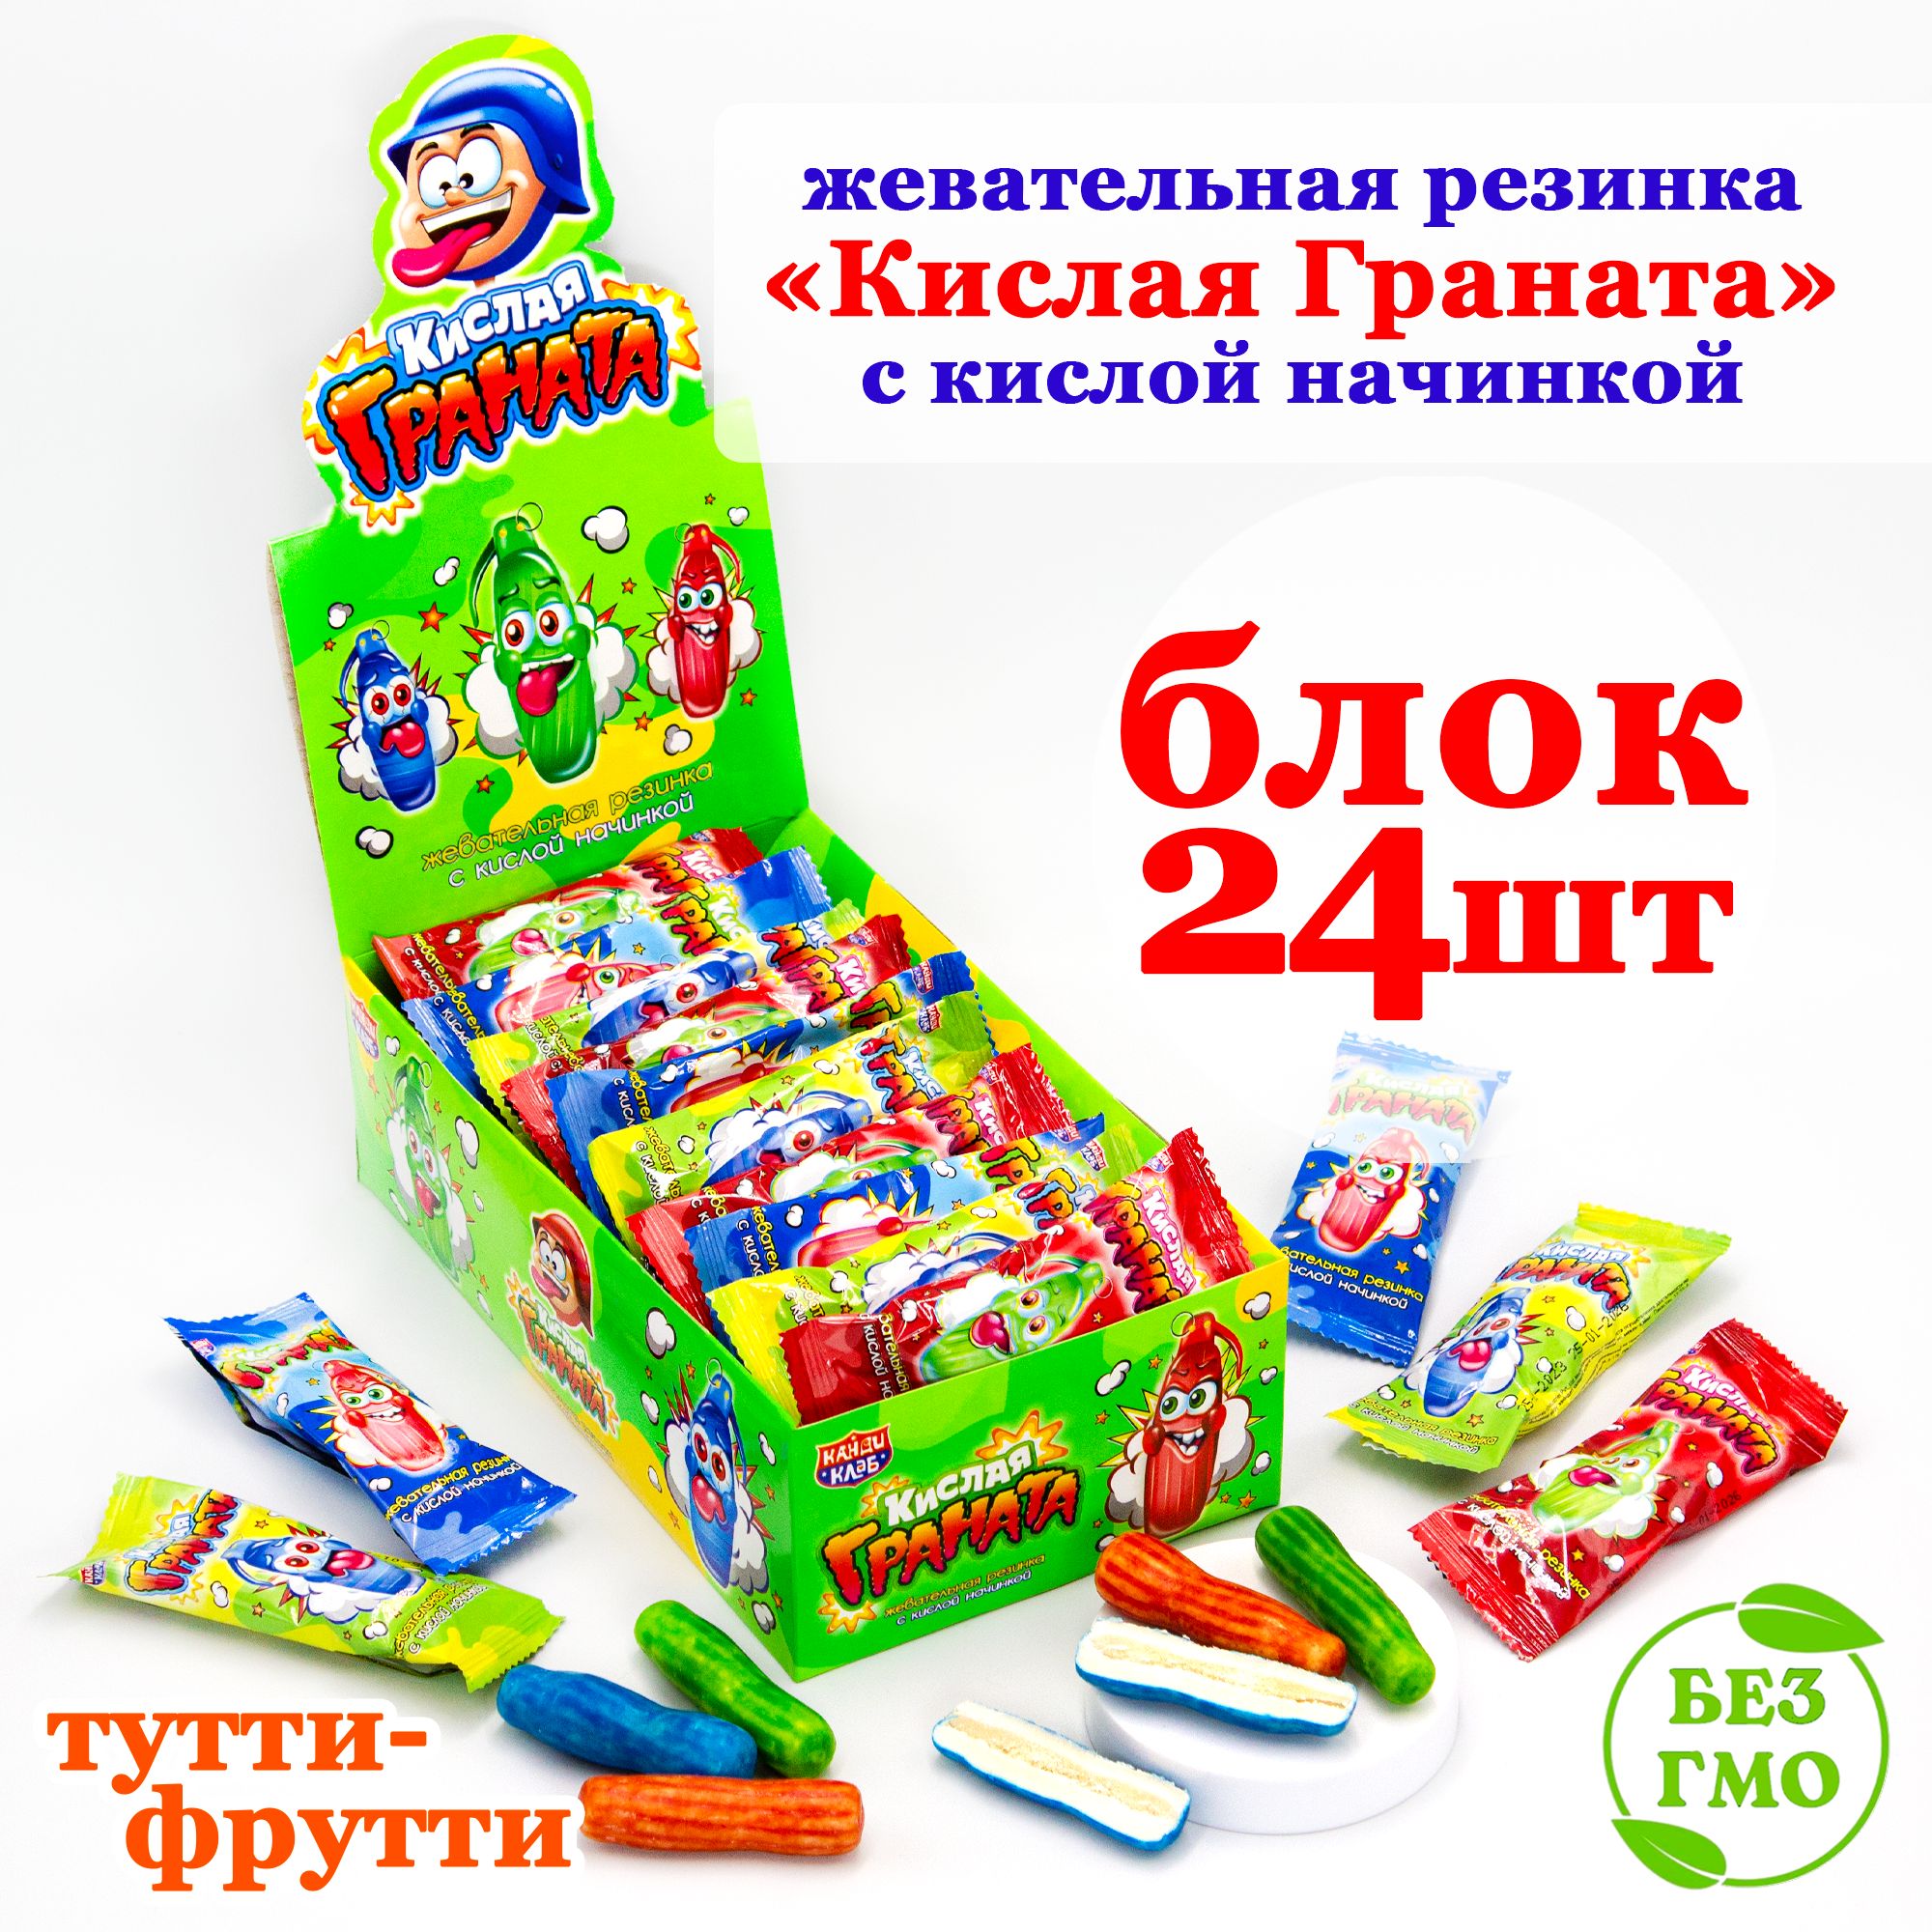 Россиян в очередной раз предупредили о росте цен на сладости